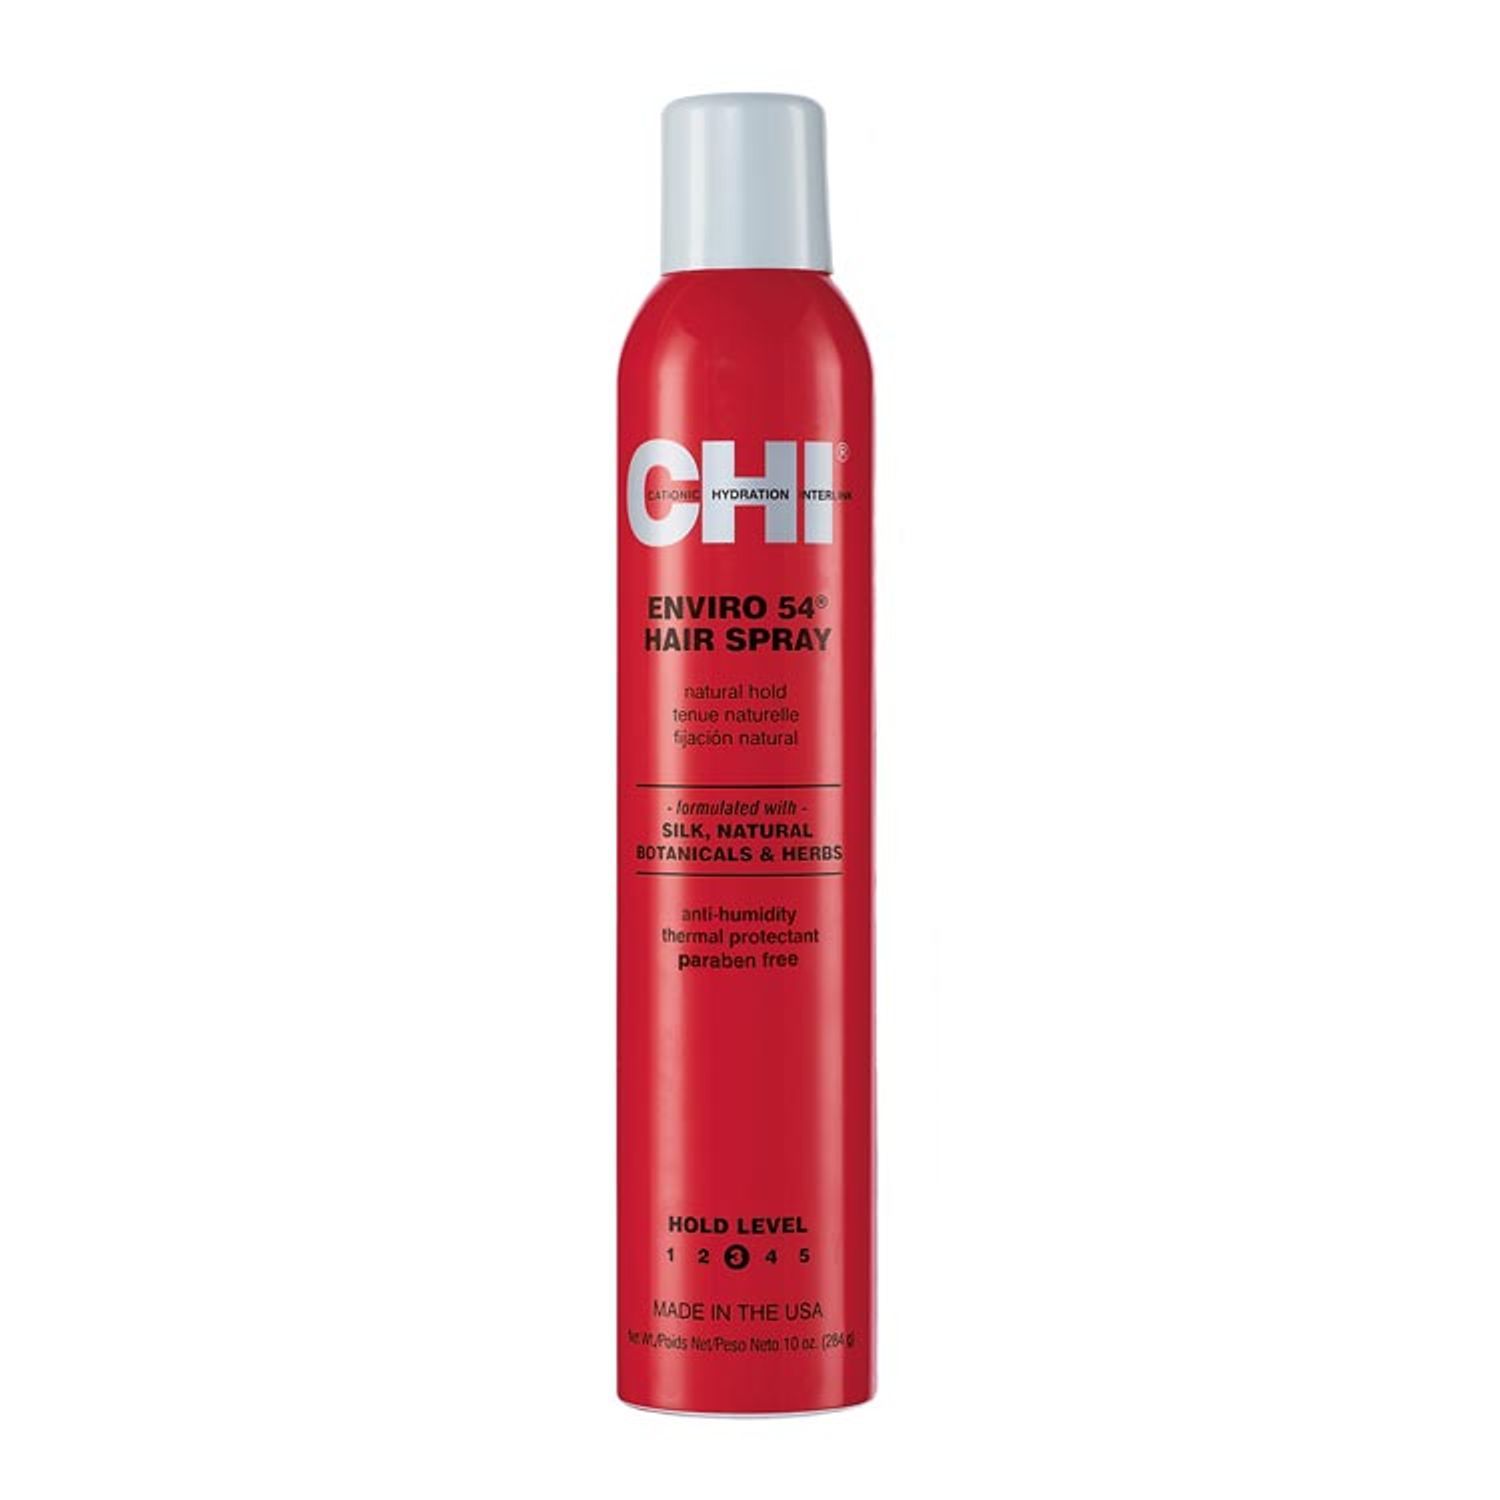 CHI® ENVIRO 54® Natural Hold Hairspray